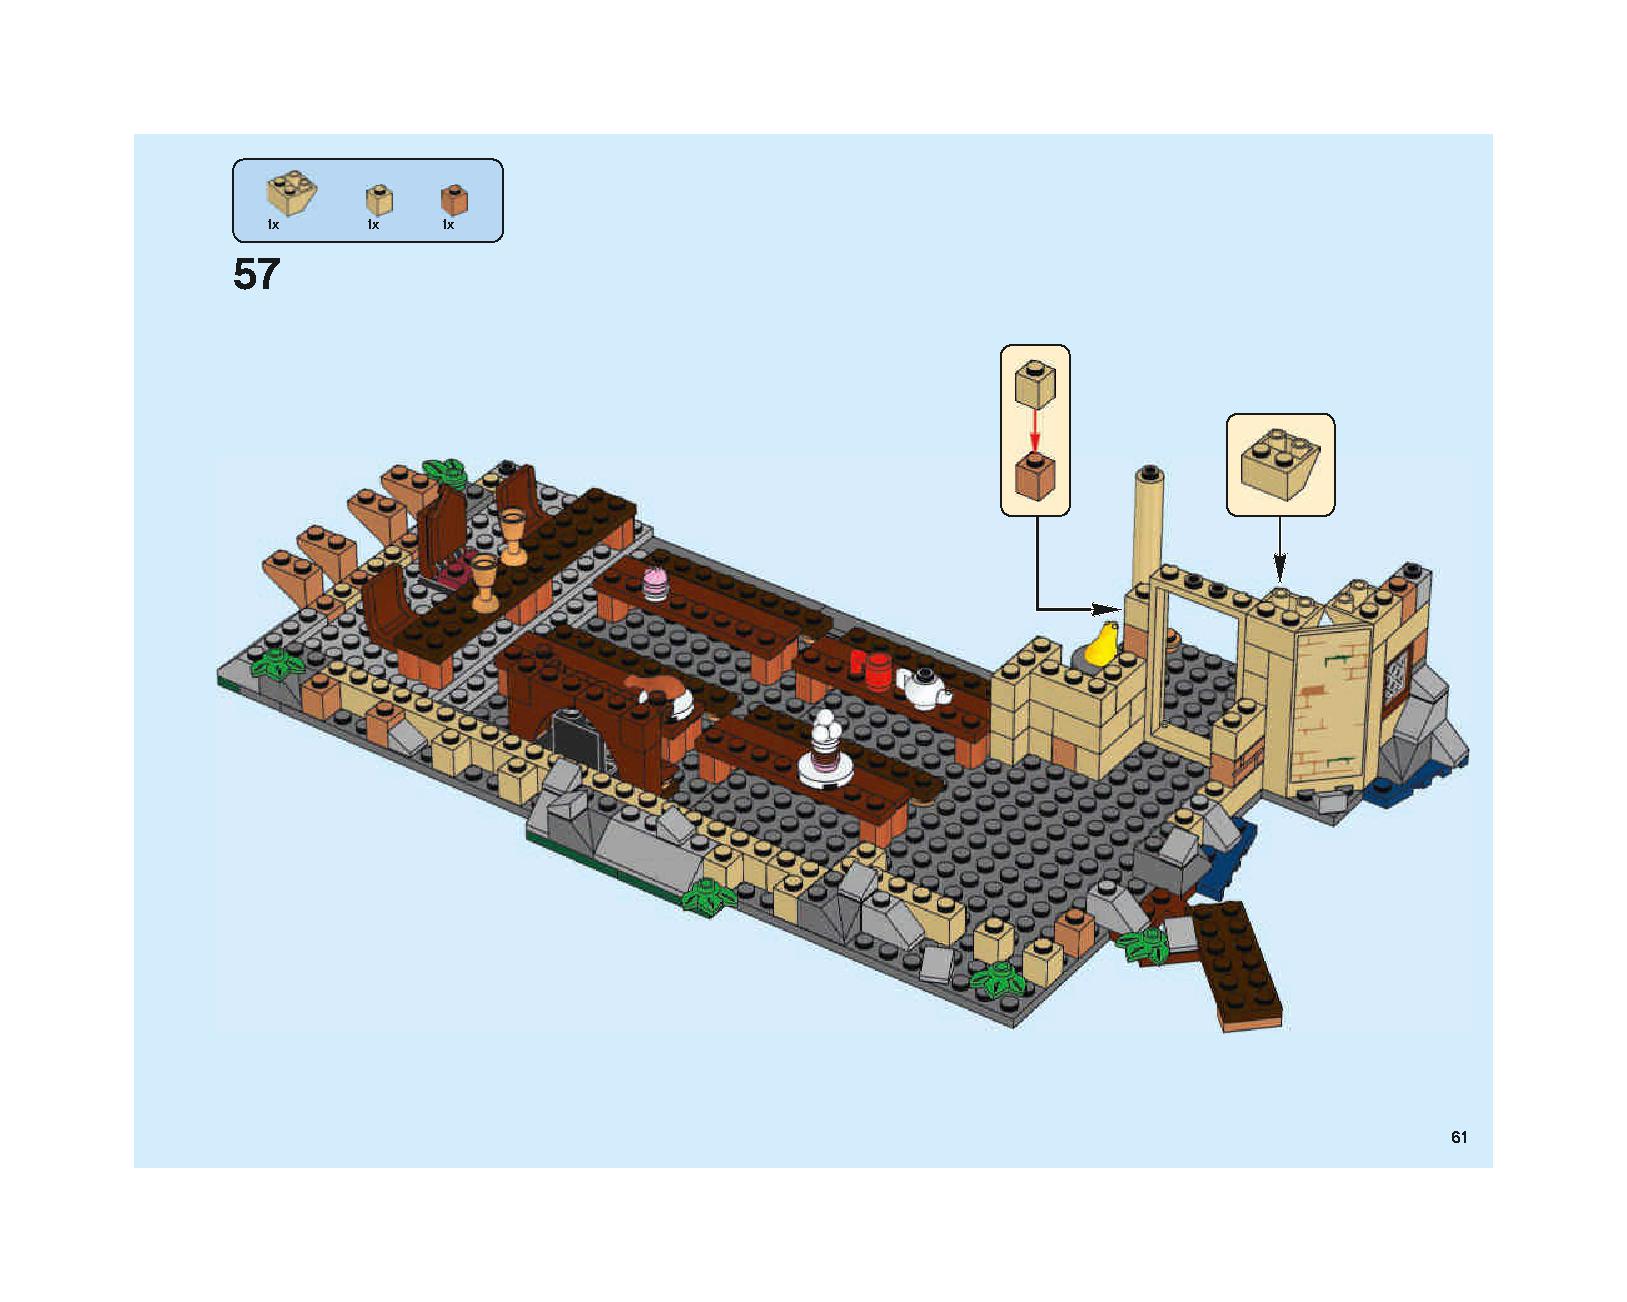 ホグワーツの大広間 75954 レゴの商品情報 レゴの説明書・組立方法 61 page